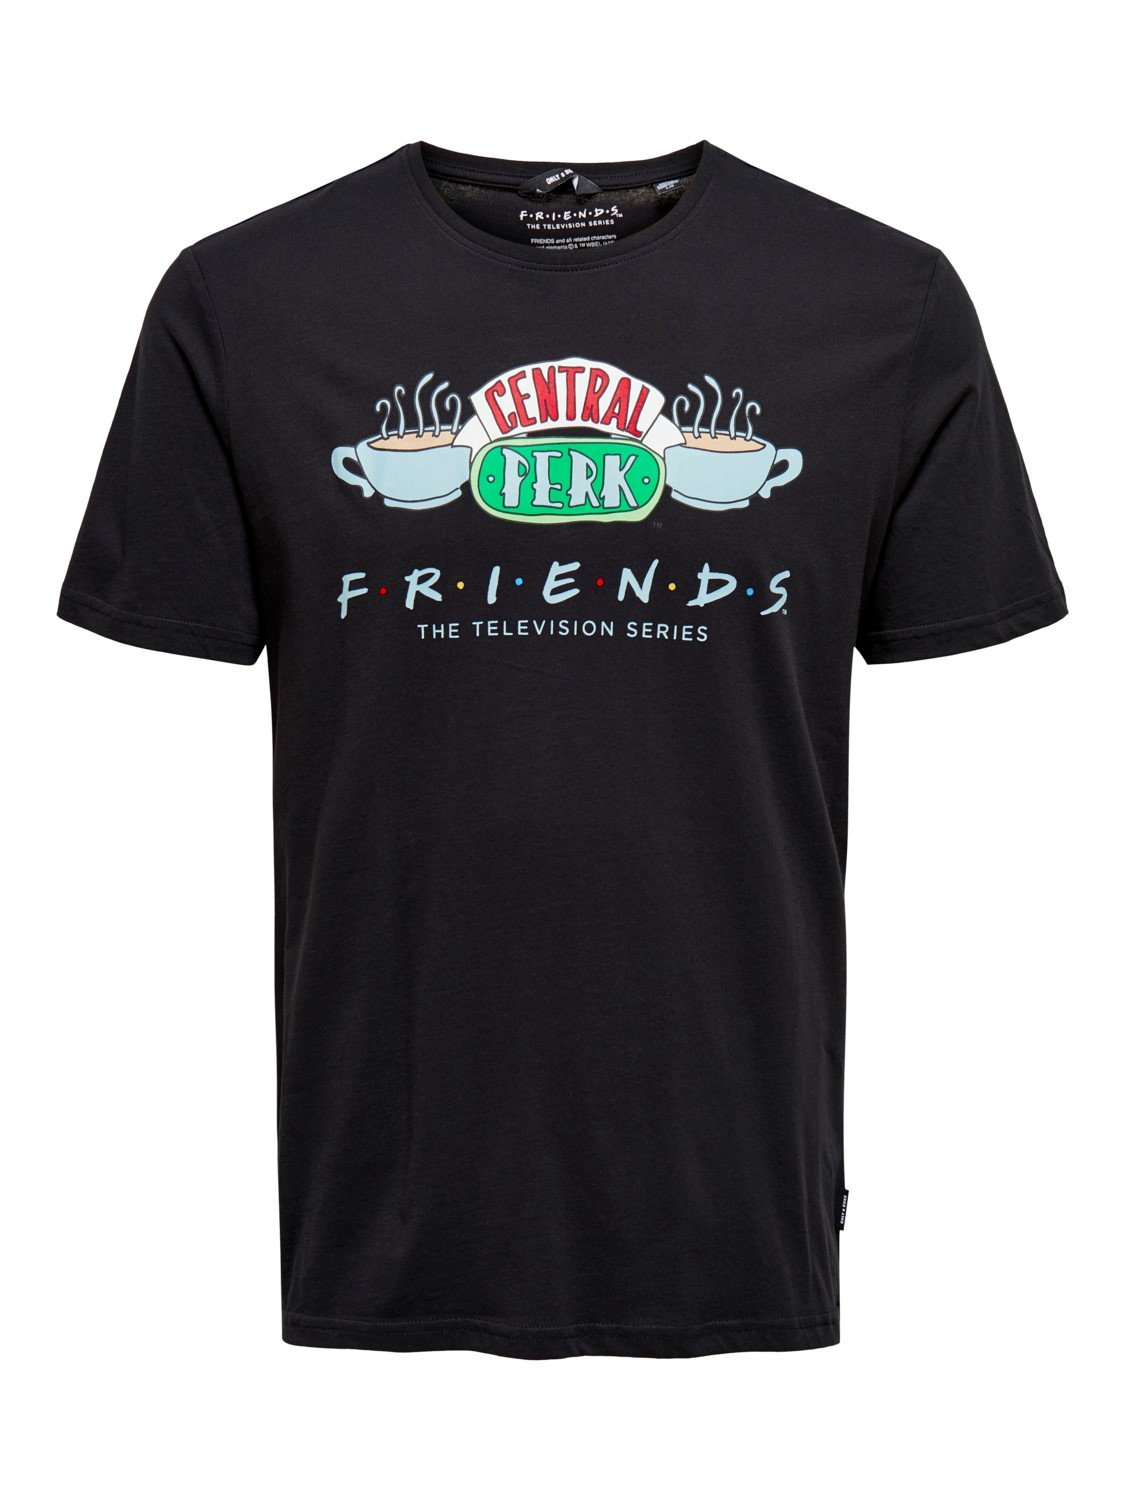 Camiseta Friends - ECRU